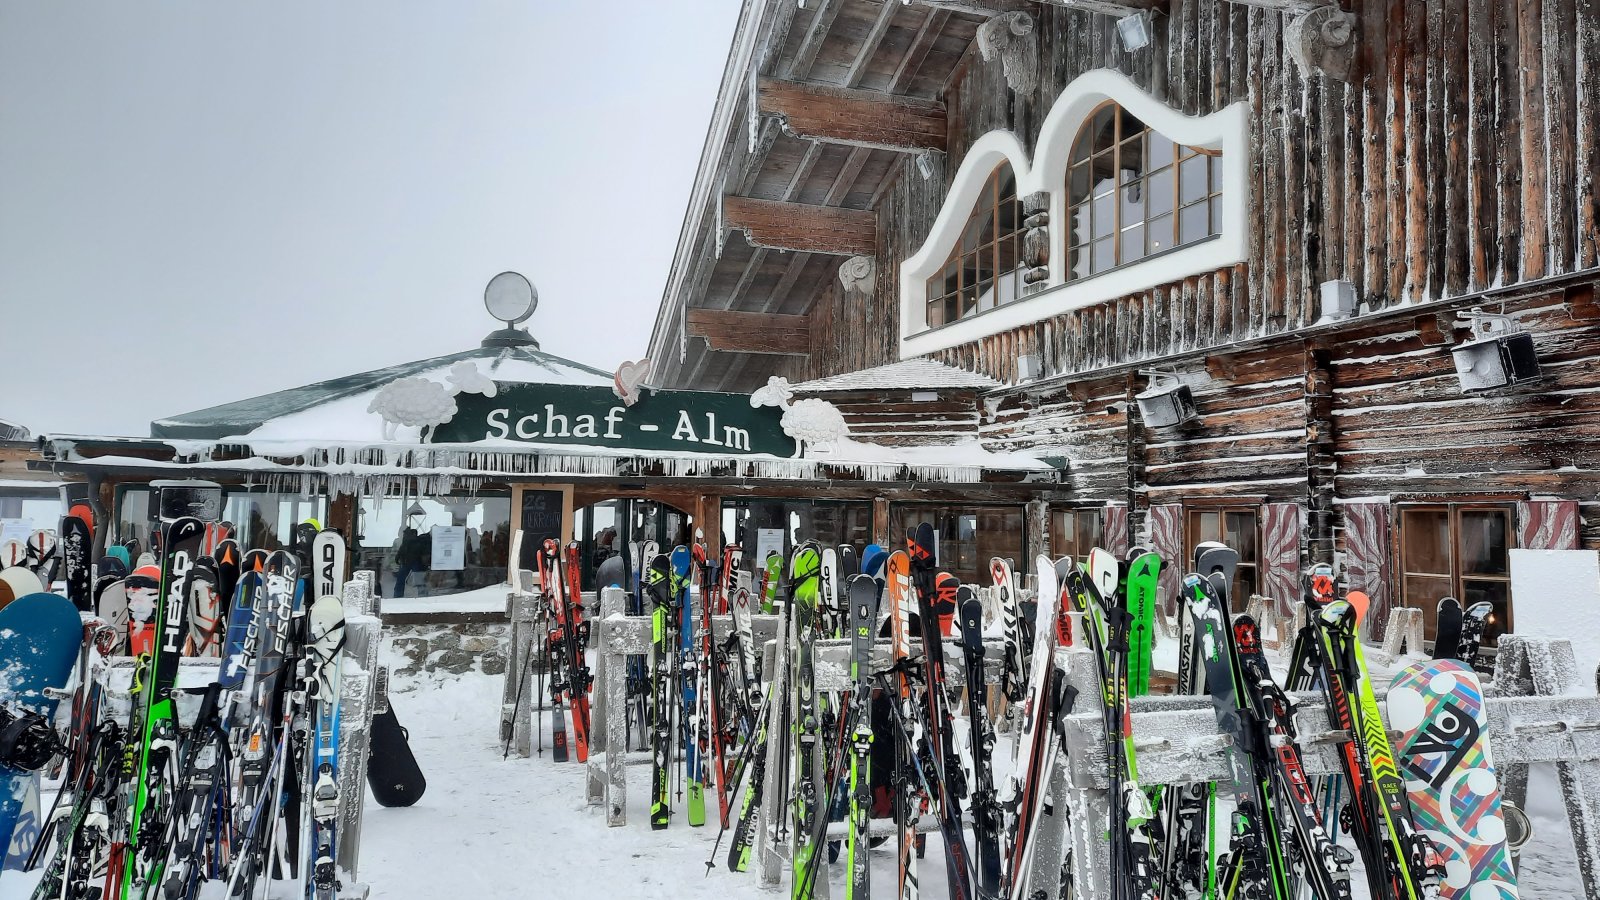 Sokak kedvenc hegyi étterme a Schaf-Alm, a "birkás" Hütte